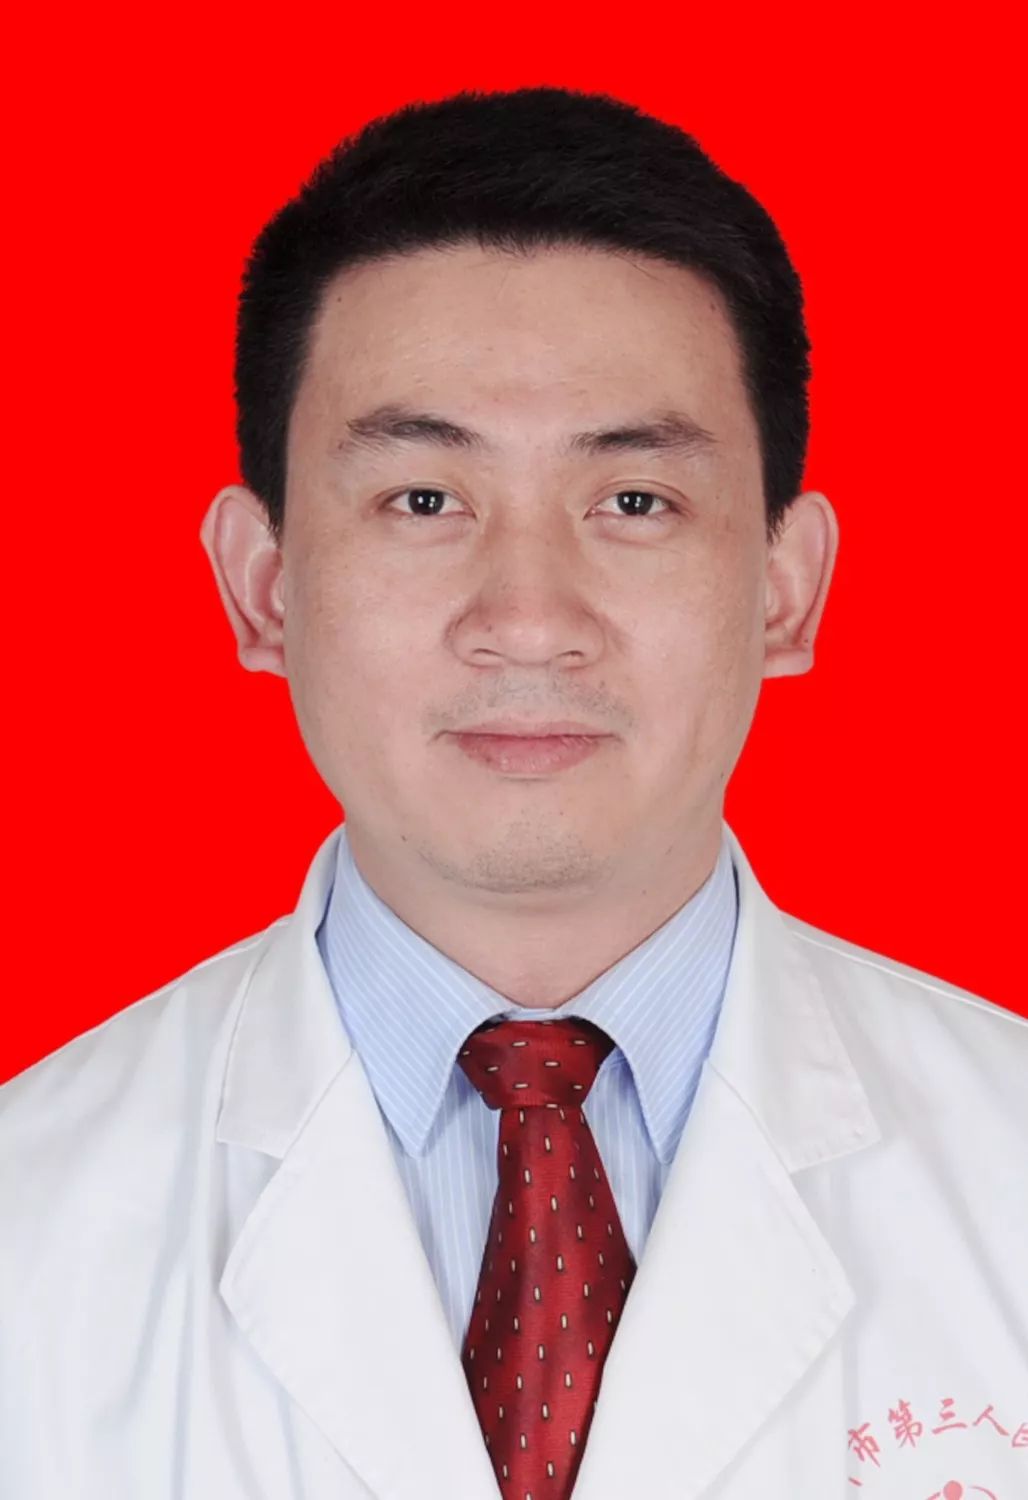 李贤坤,副主任医师,医学硕士,毕业于西安交大医学院